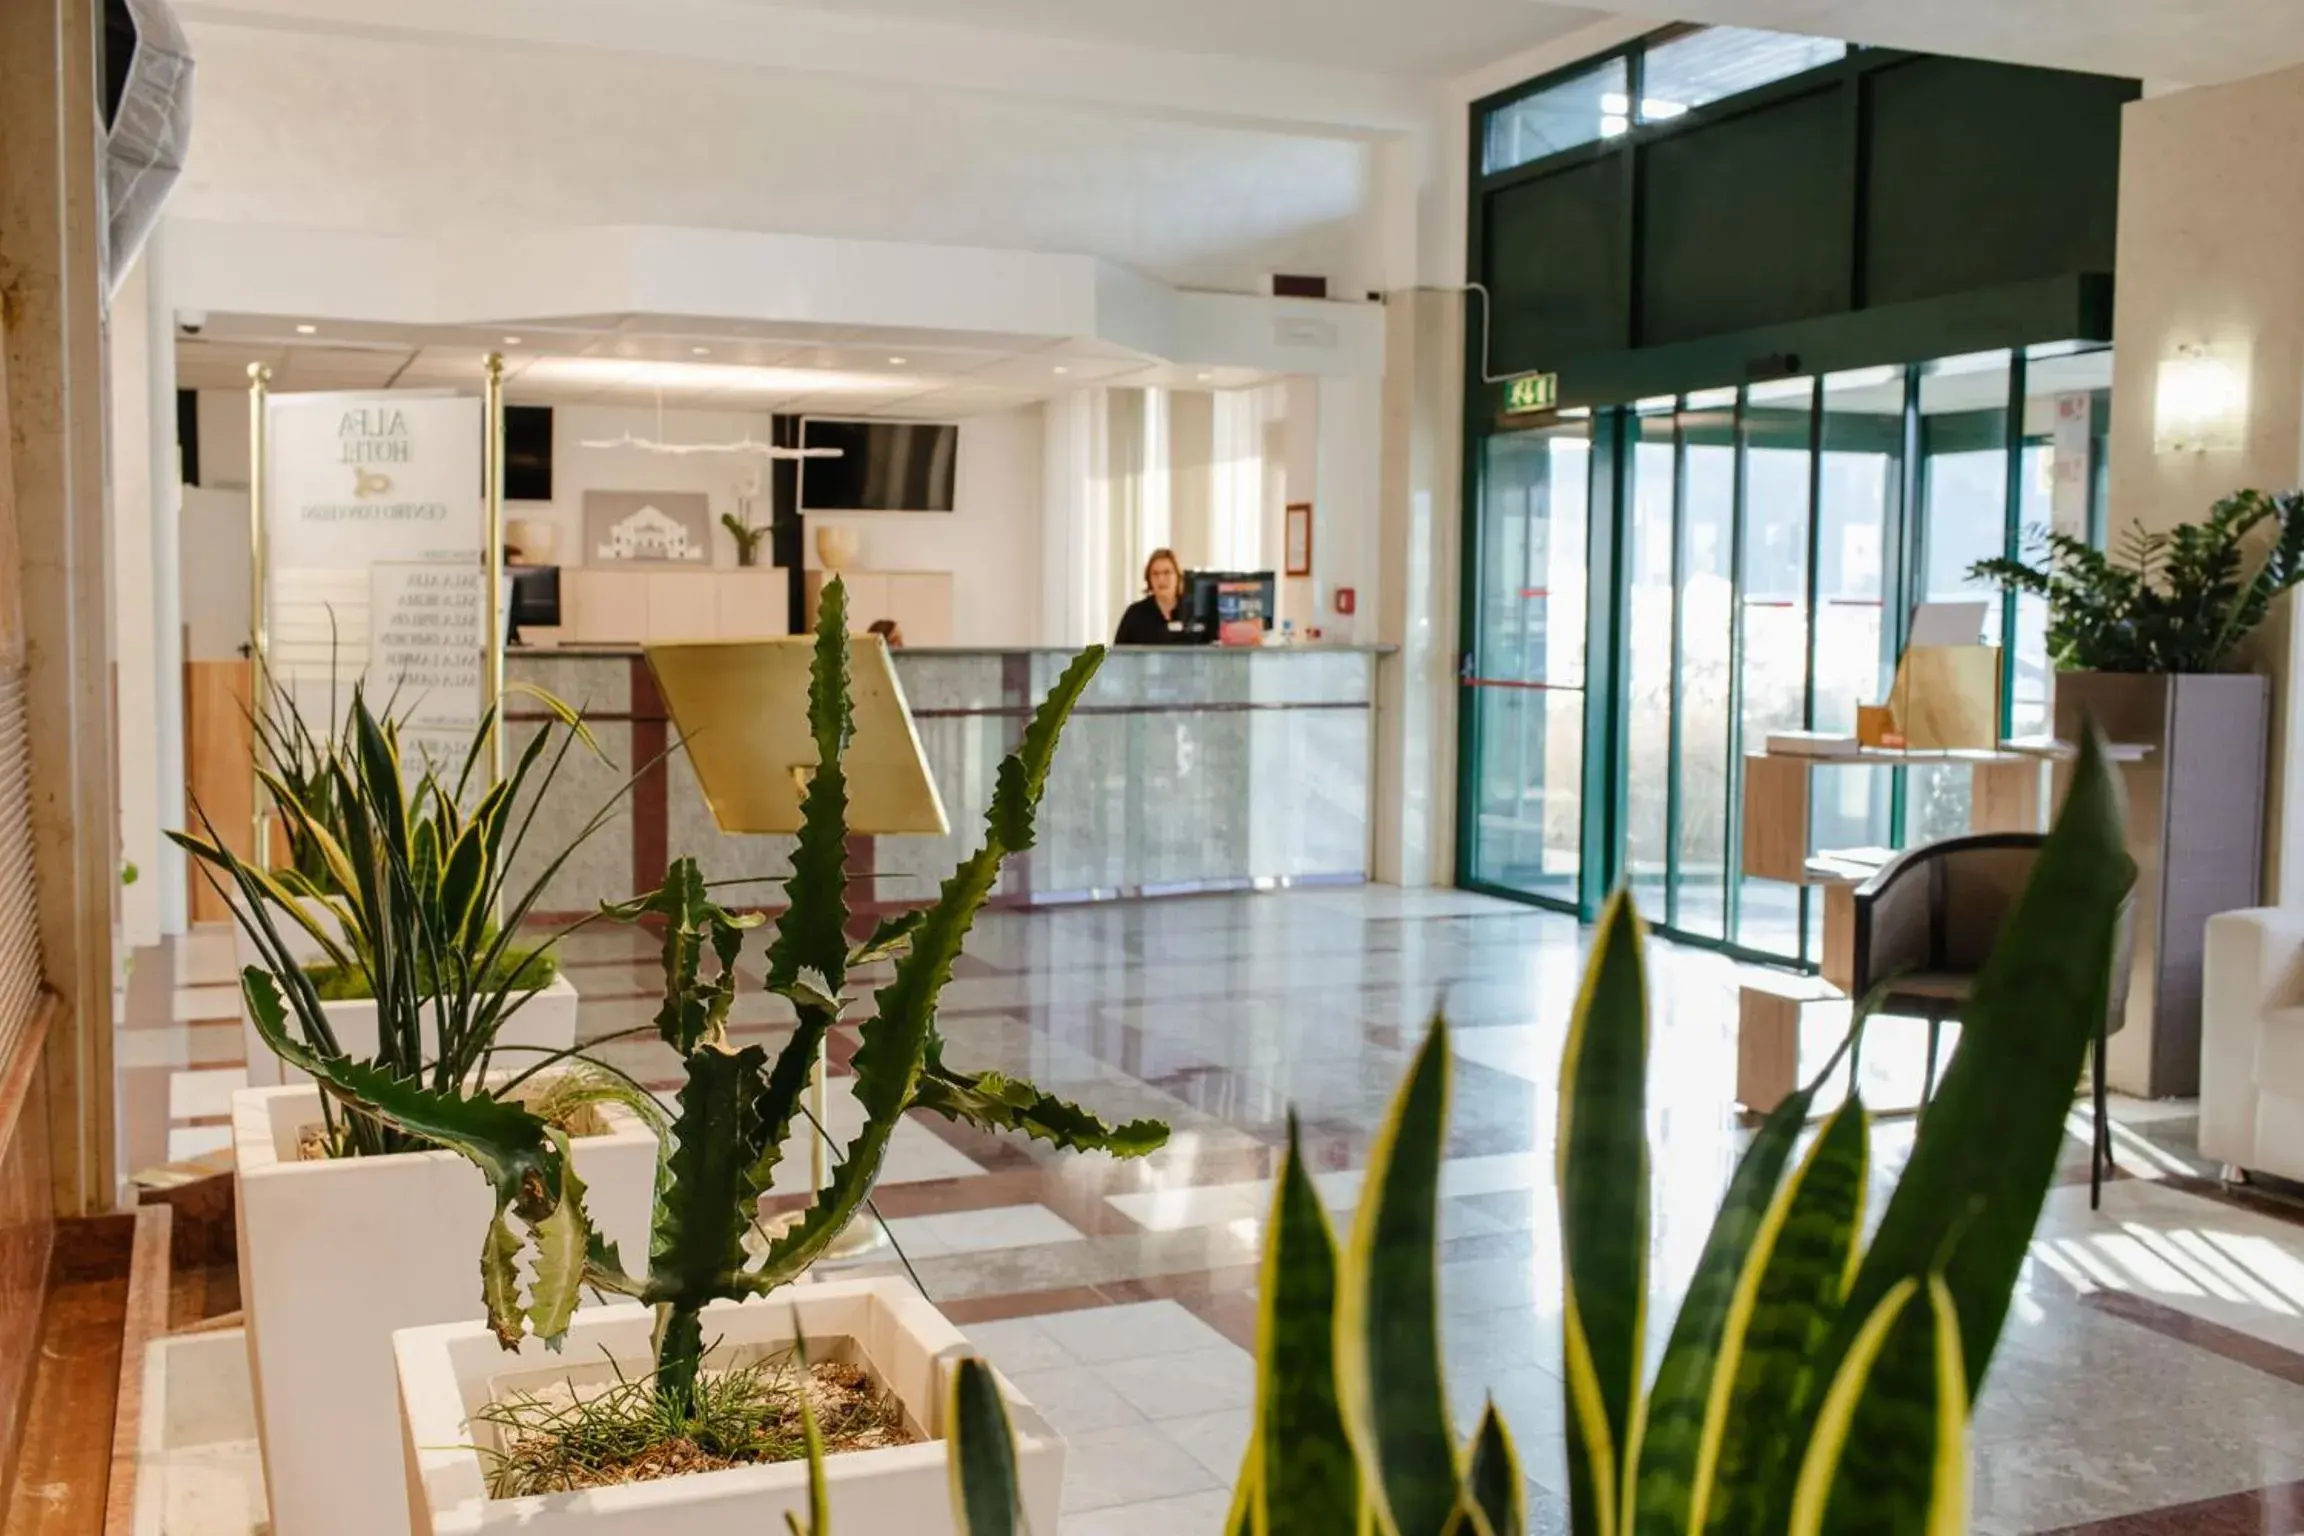 Lobby or reception, Lobby/Reception in Alfa Fiera Hotel